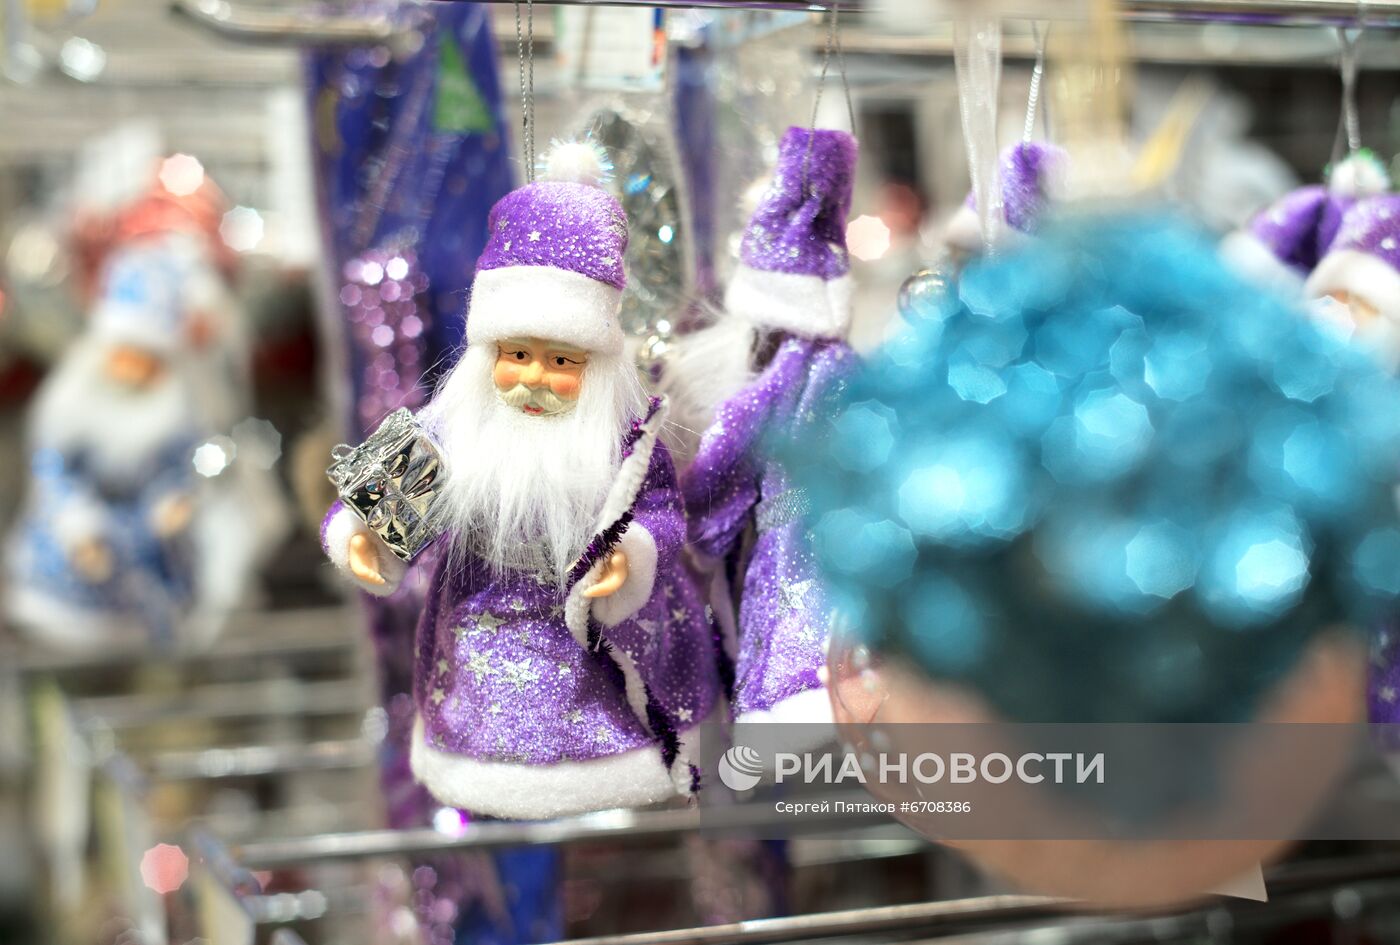 Предновогодняя торговля в гипермаркете "Метро" в Москве